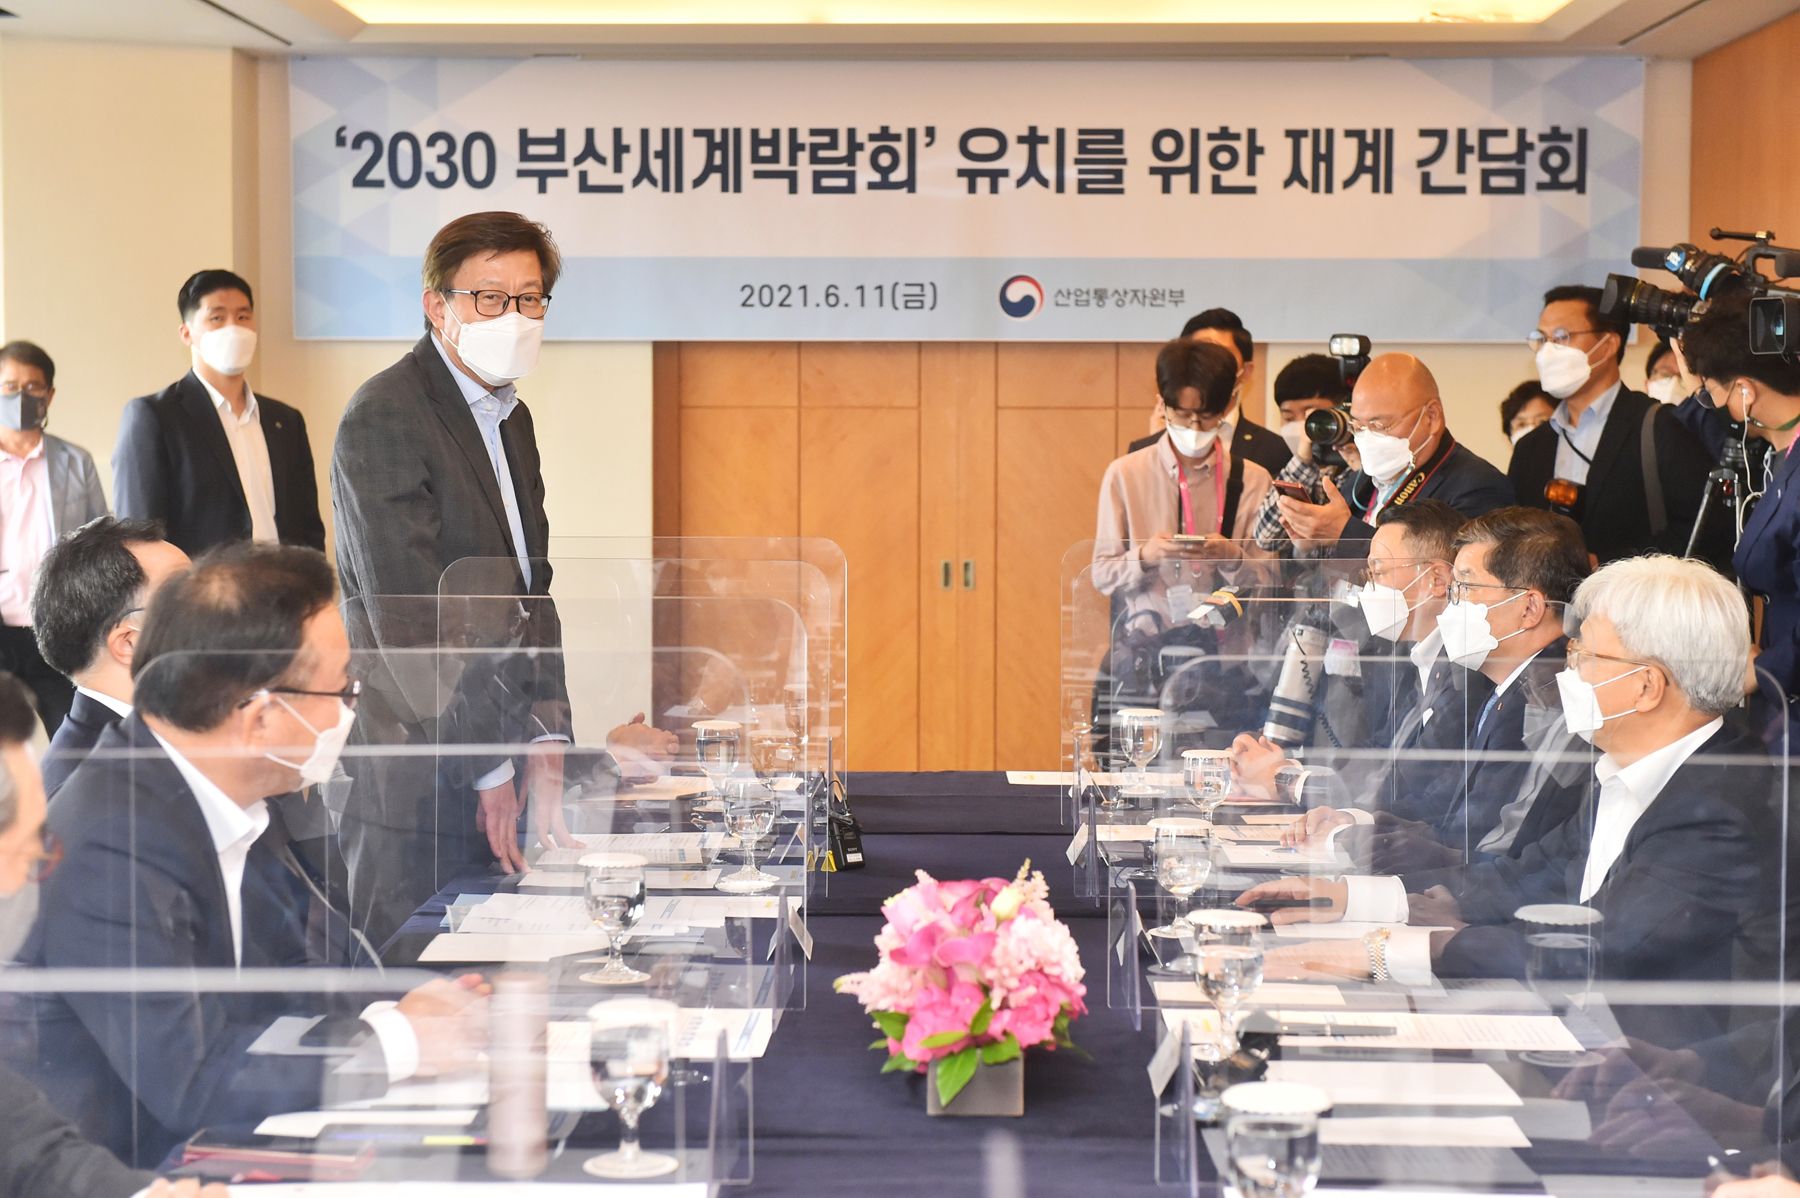 20210611 2030부산세계박람회 유치위원장 선임 간담회(롯데호텔) 사진4